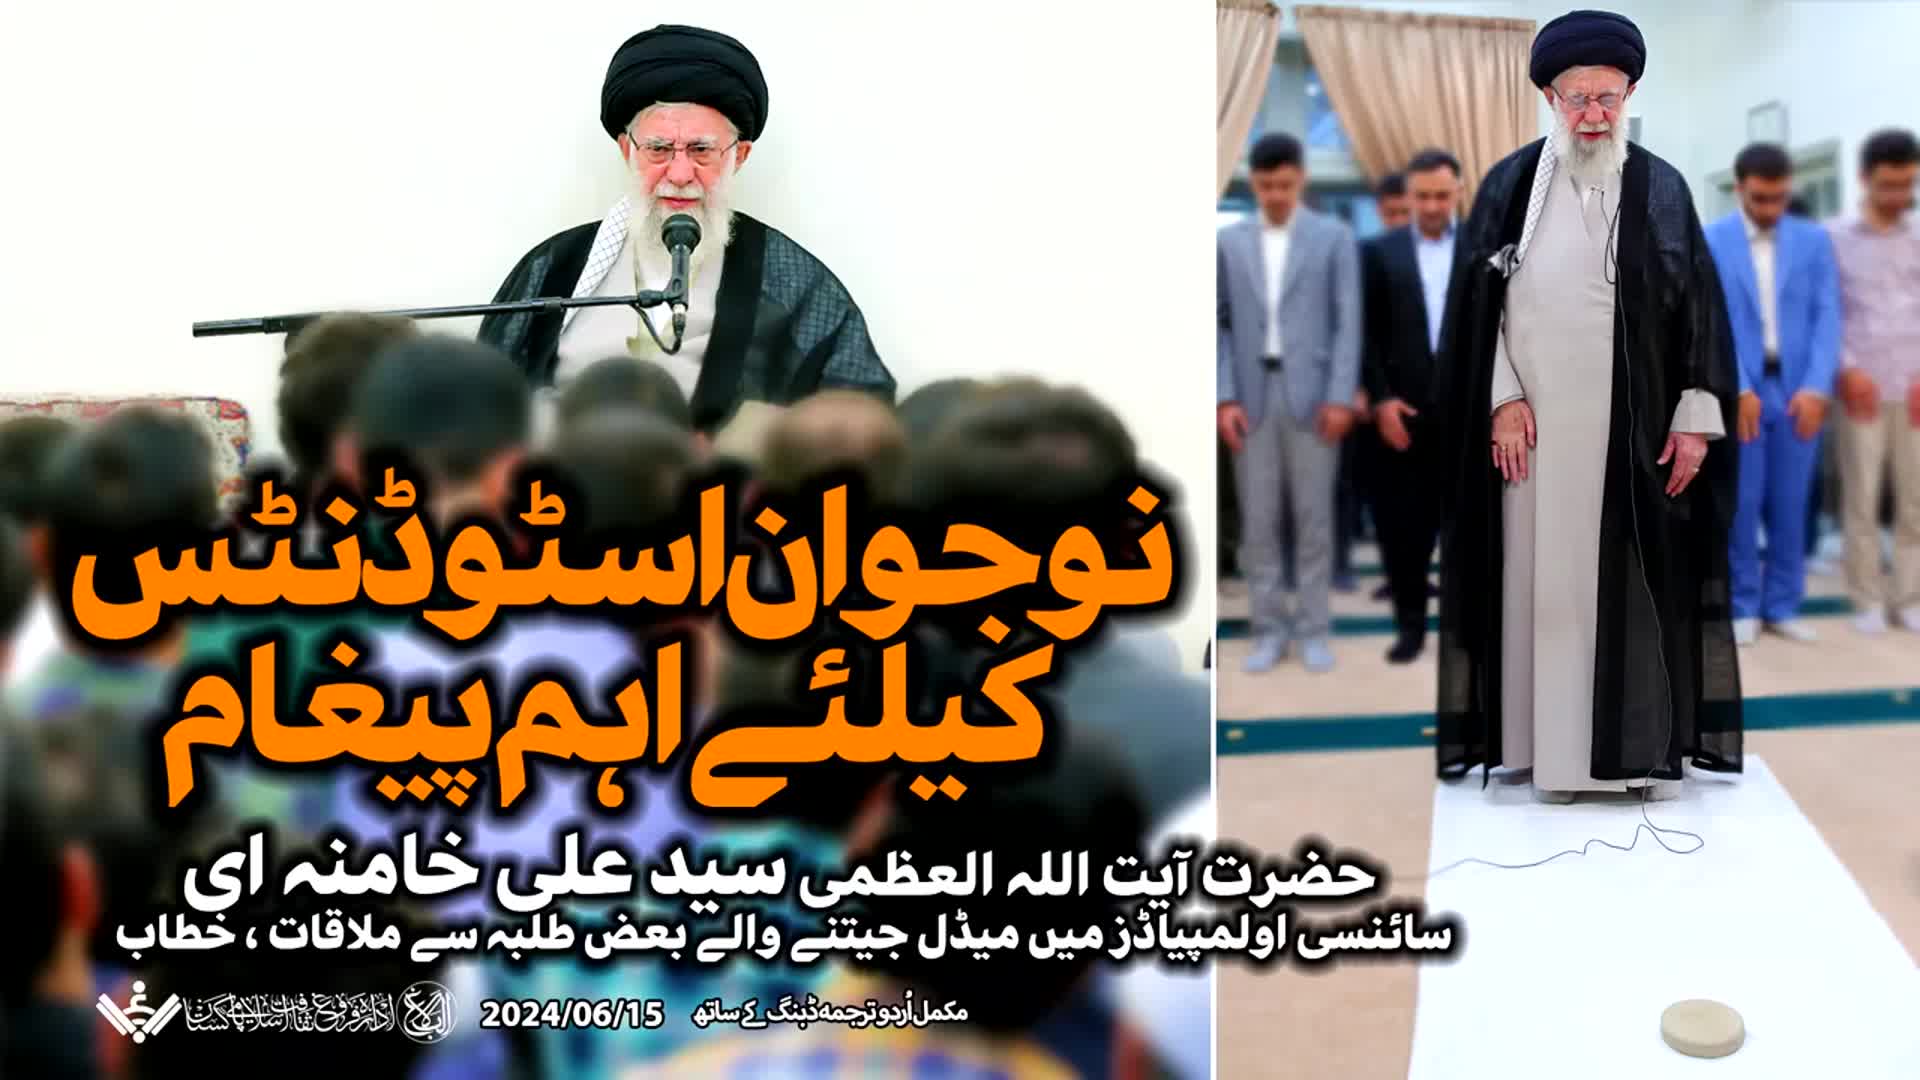 {Speech} Imam Khamenei, Genius Students | نابغہ اسٹوڈنٹس سے خطاب | Urdu